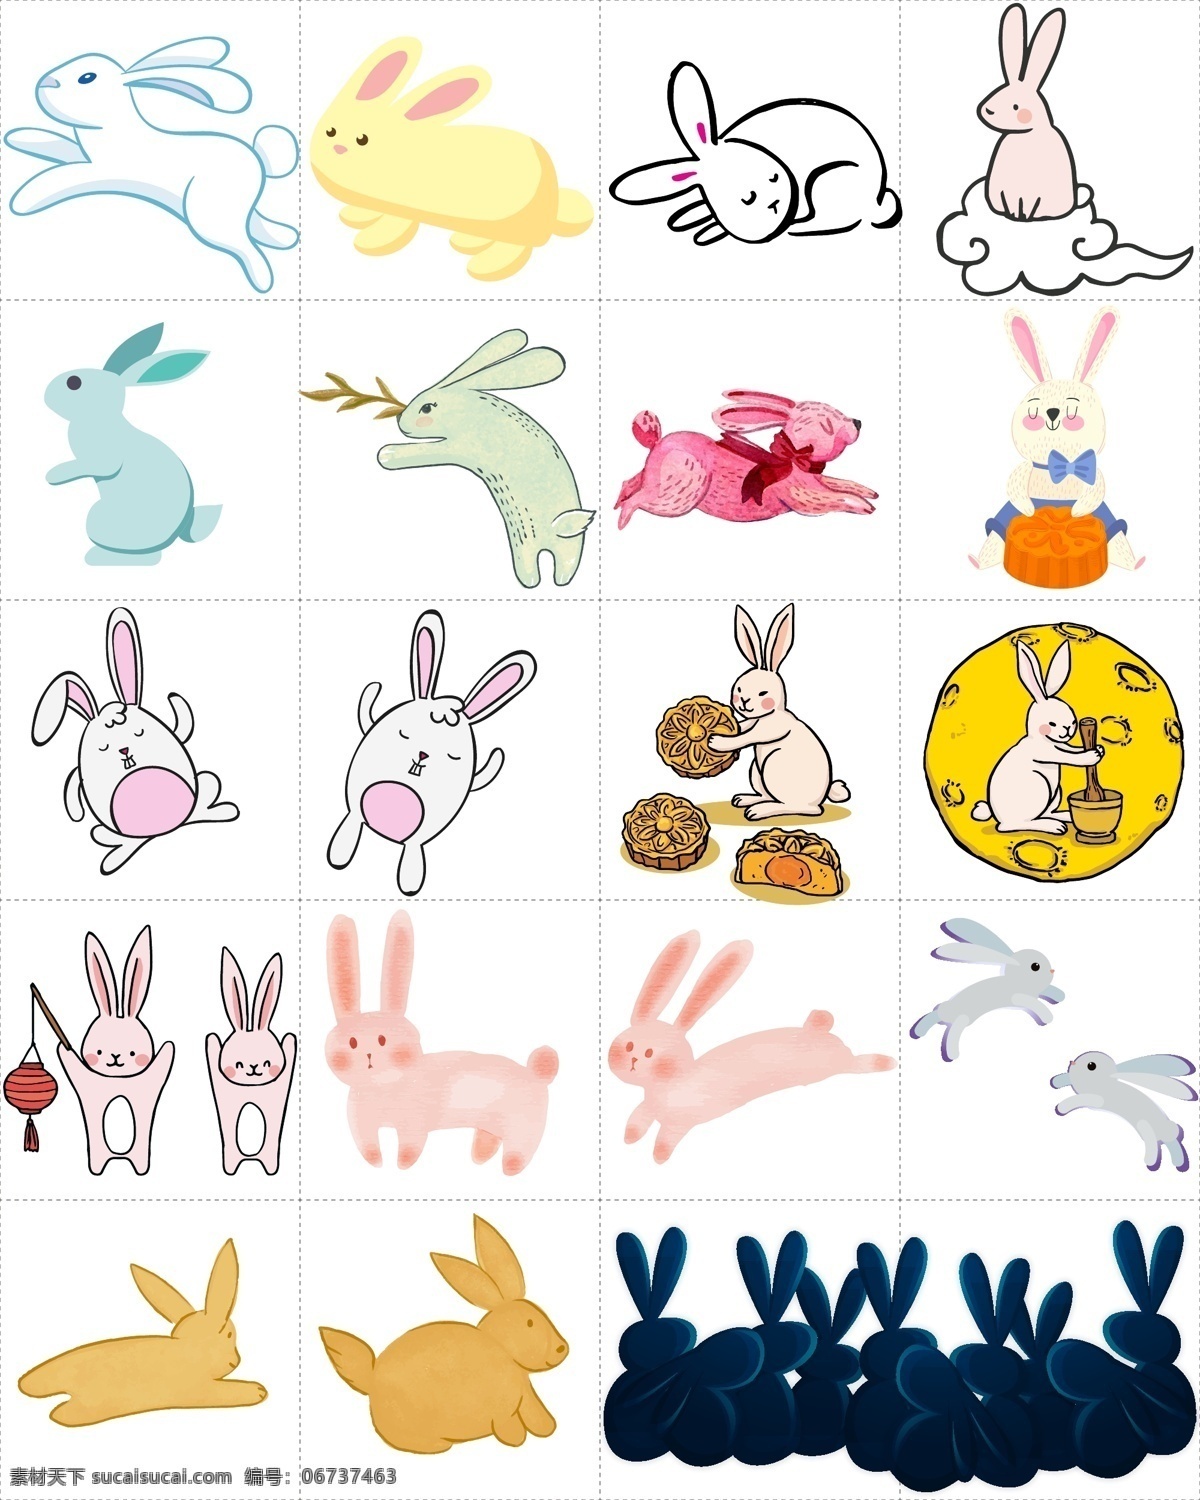 矢量 卡通 彩色 中秋节 兔子 月兔 矢量动物 矢量兔子 卡通兔子 彩色兔子 可爱兔子 中秋节兔子 活泼兔子 兔子月饼 创意兔子 艺术兔子 手绘兔子 兔子插画 兔子插图 动物 生物世界 野生动物